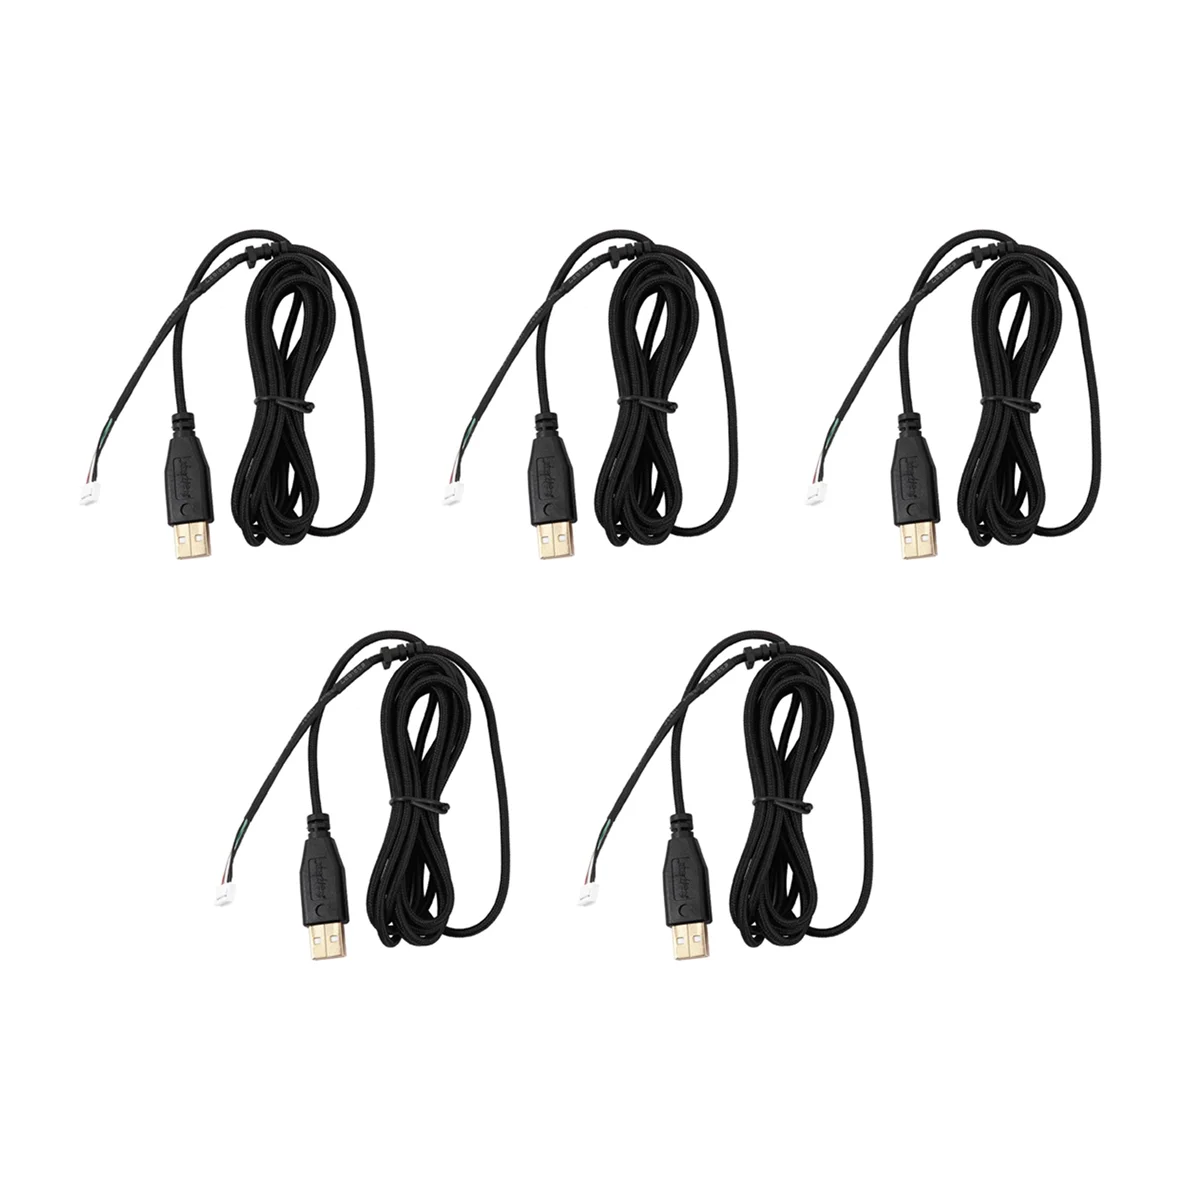 

5X USB кабель мыши линии для Razer Deathadder Hex Molten 2012 прибл. 2,1 м, 5 проводов, 5 контактов, покрытие из черного золота